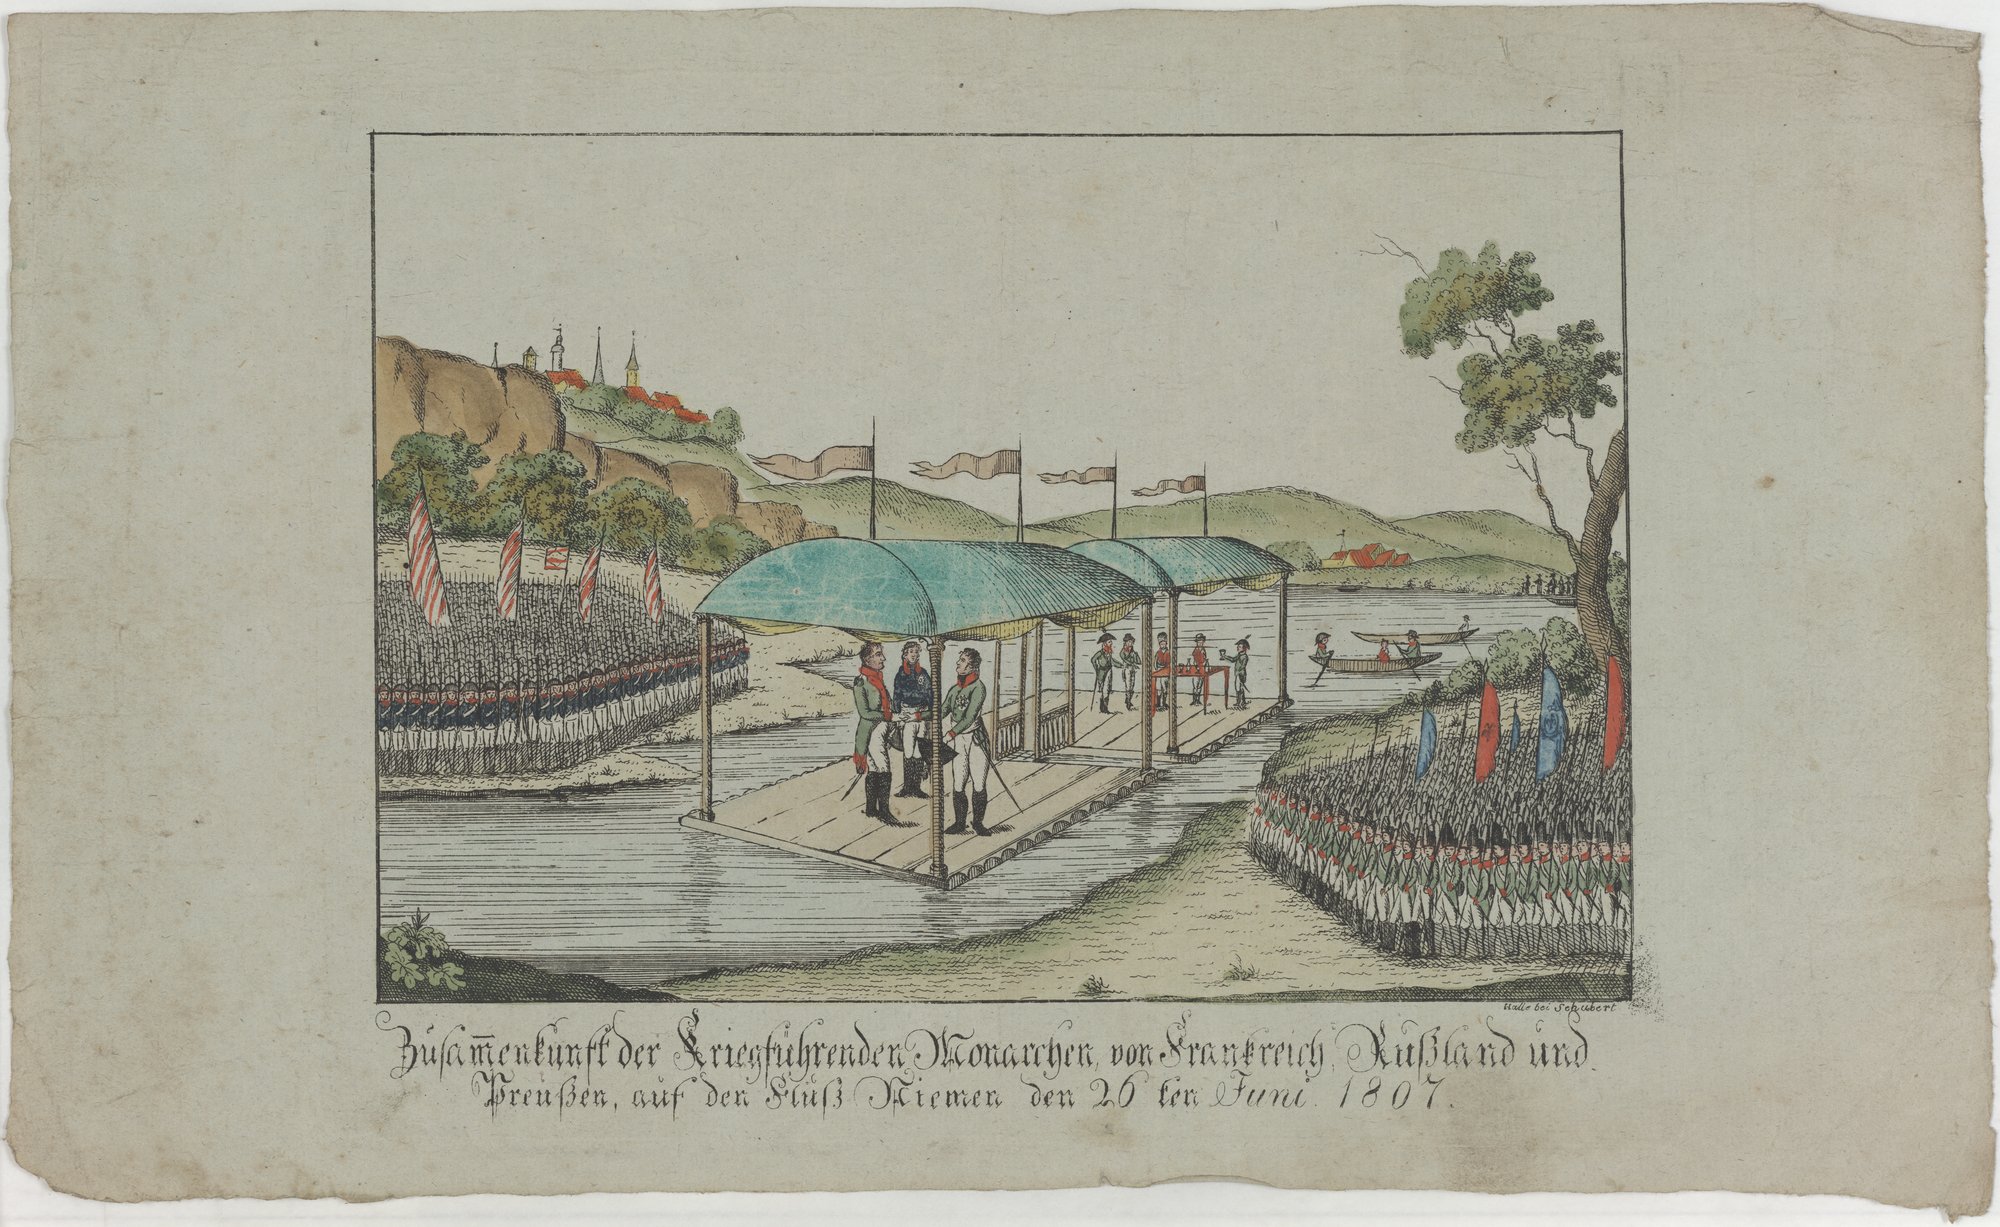 Zusamenkunft der Kriegsführenden Monarchen von Frankreich, Rußland und/ Preußen, auf den Fluß Niemen den 26 ten Juni 1807. (Kulturstiftung Sachsen-Anhalt Public Domain Mark)